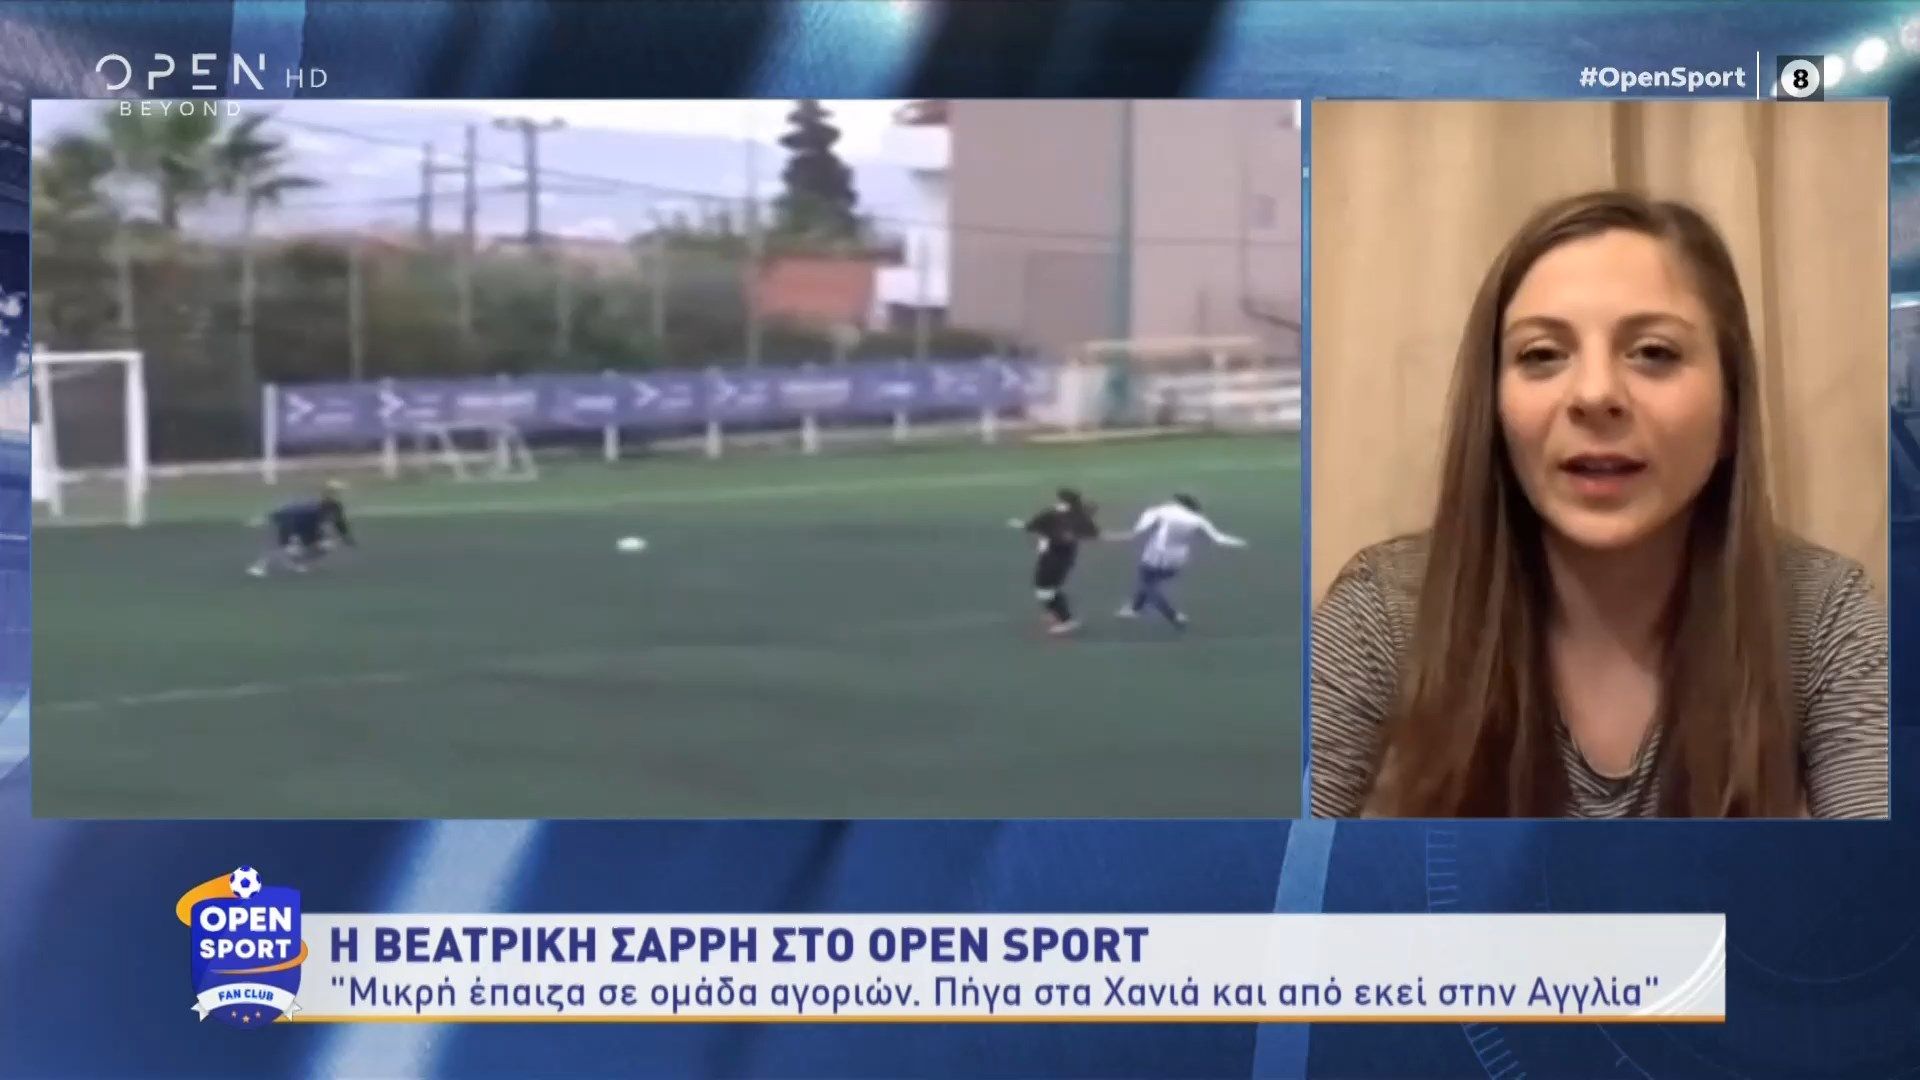 Βεατρίκη Σαρρή: Η πρώτη Ελληνίδα που θα αγωνιστεί σε Α’ κατηγορία Αγγλίας μιλάει για όλα! (video)